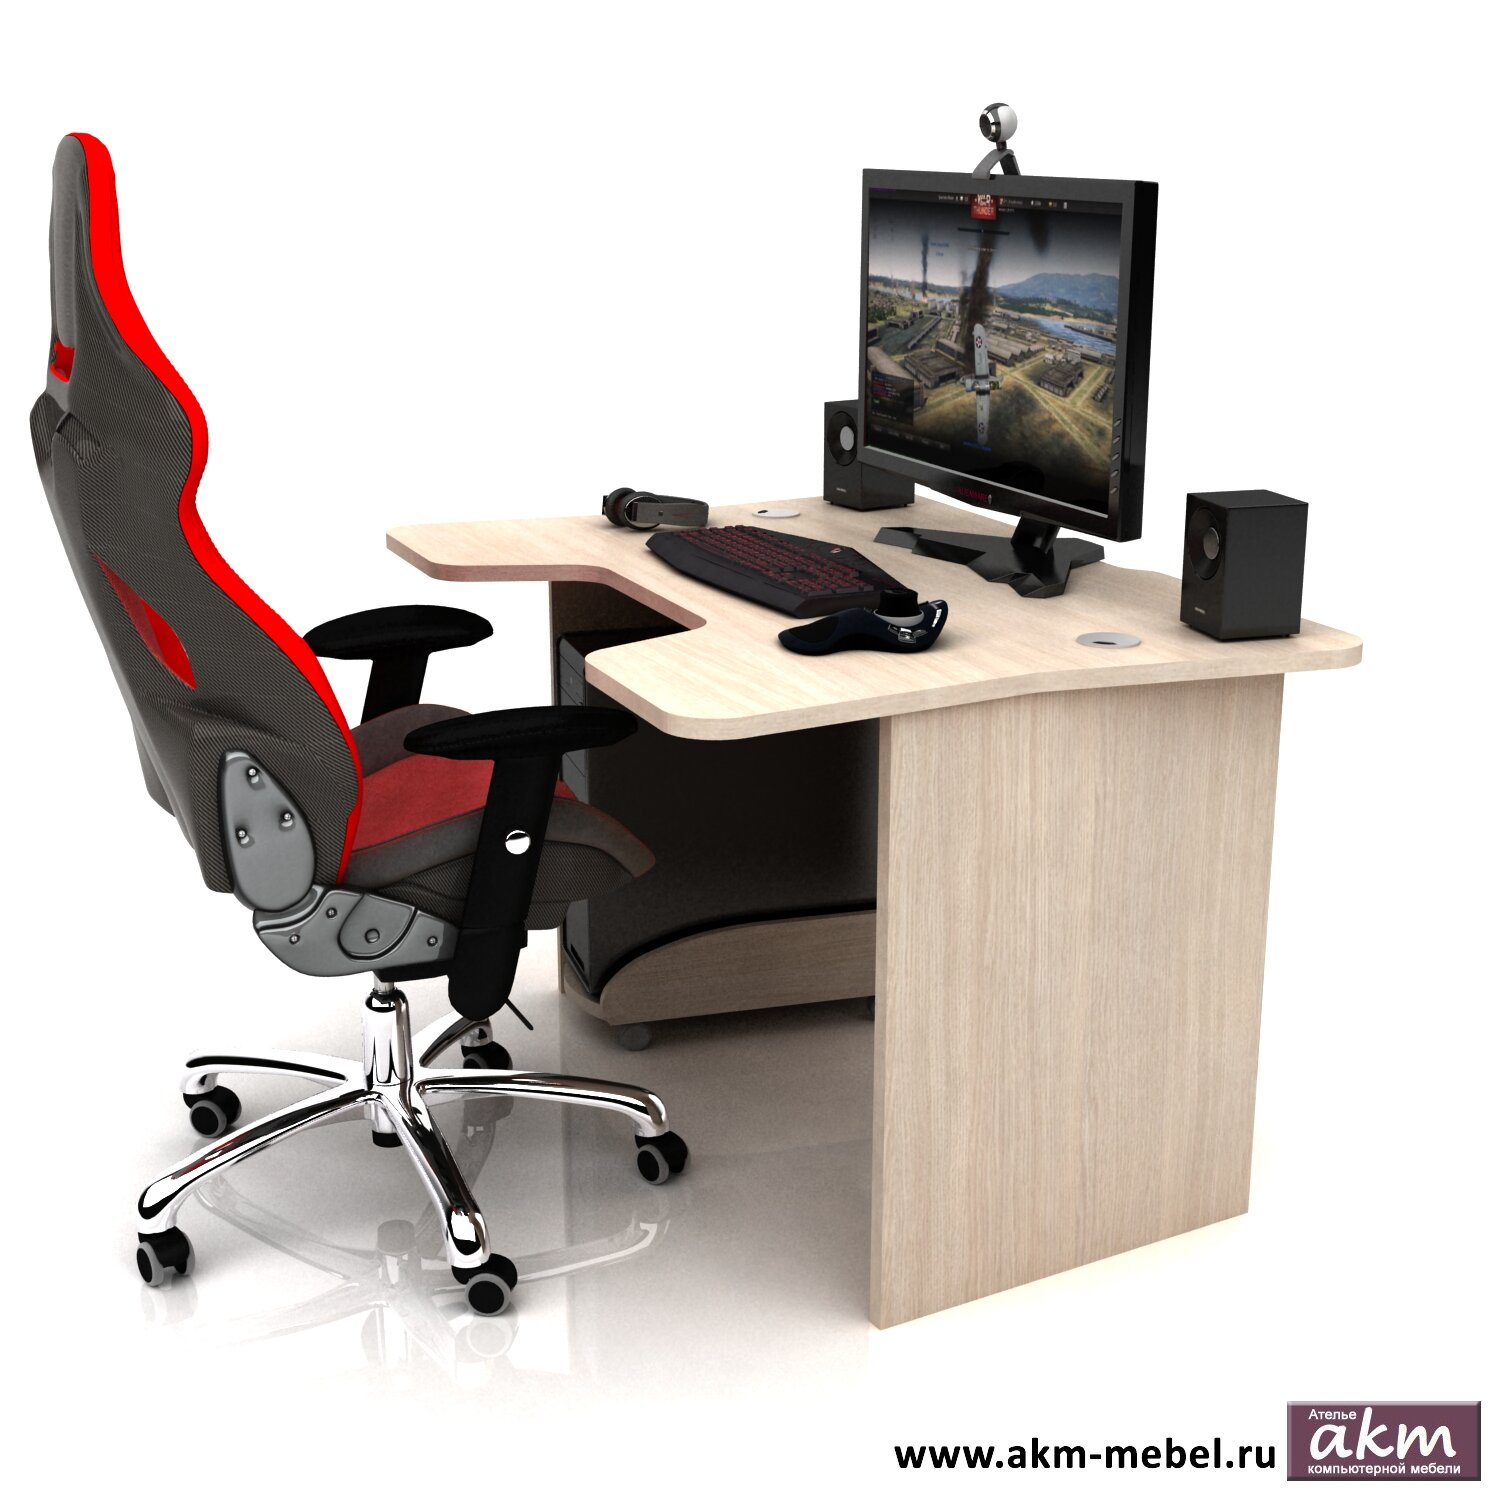 Игровой стол AKM-MEBEL DX Comfort фото 1